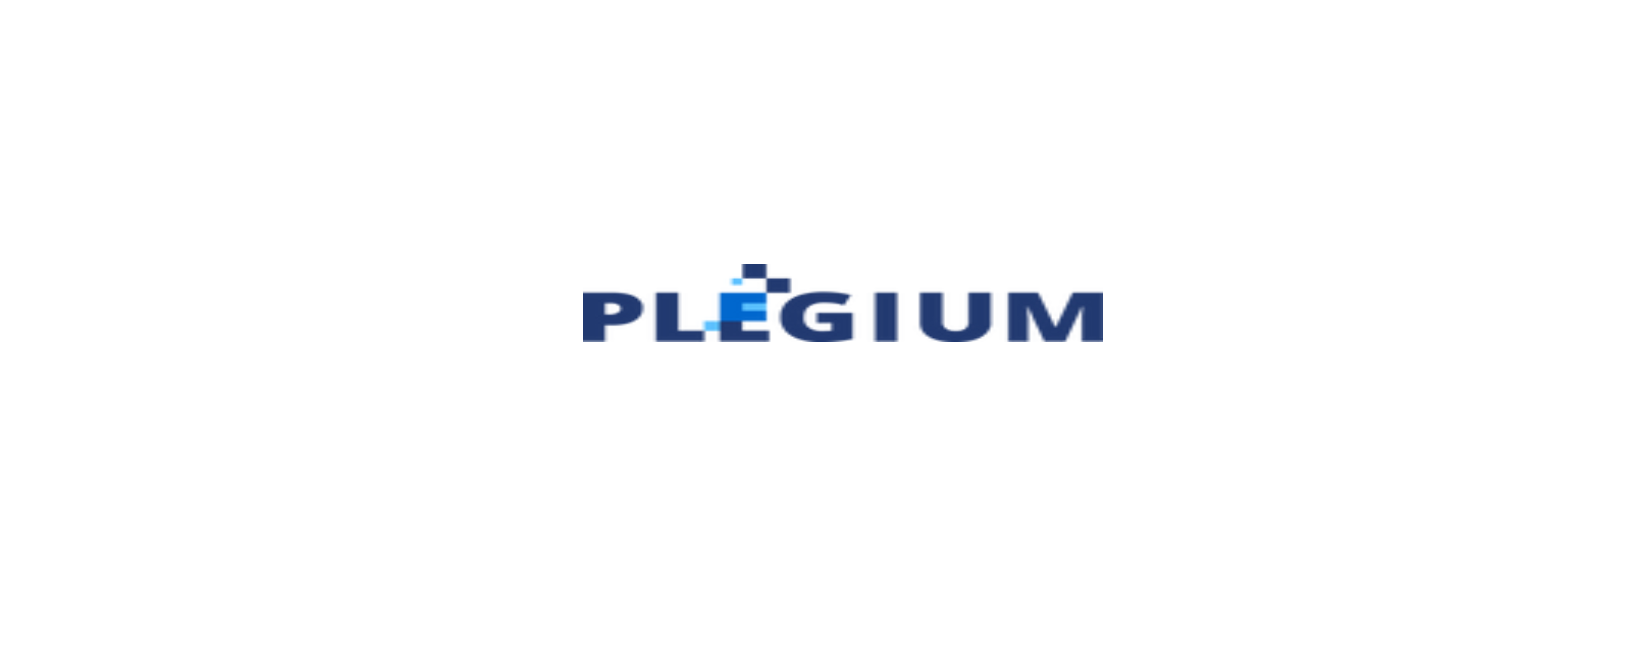 Plegium Discount Code 2022